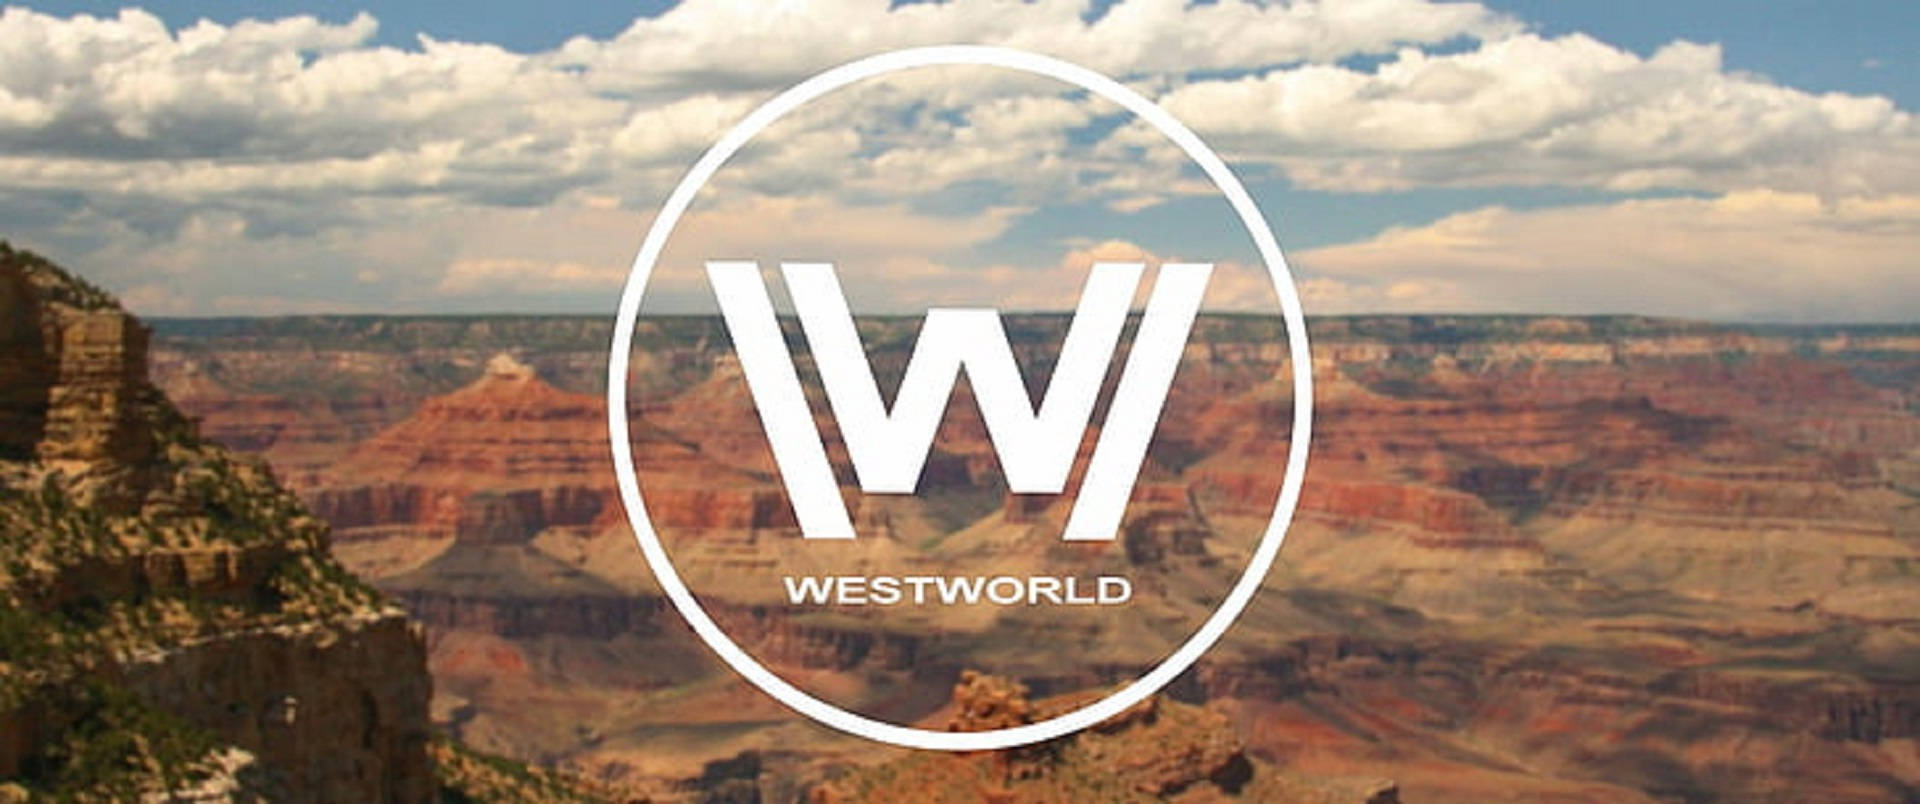 Westworld-logo I Bjergklippen Wallpaper